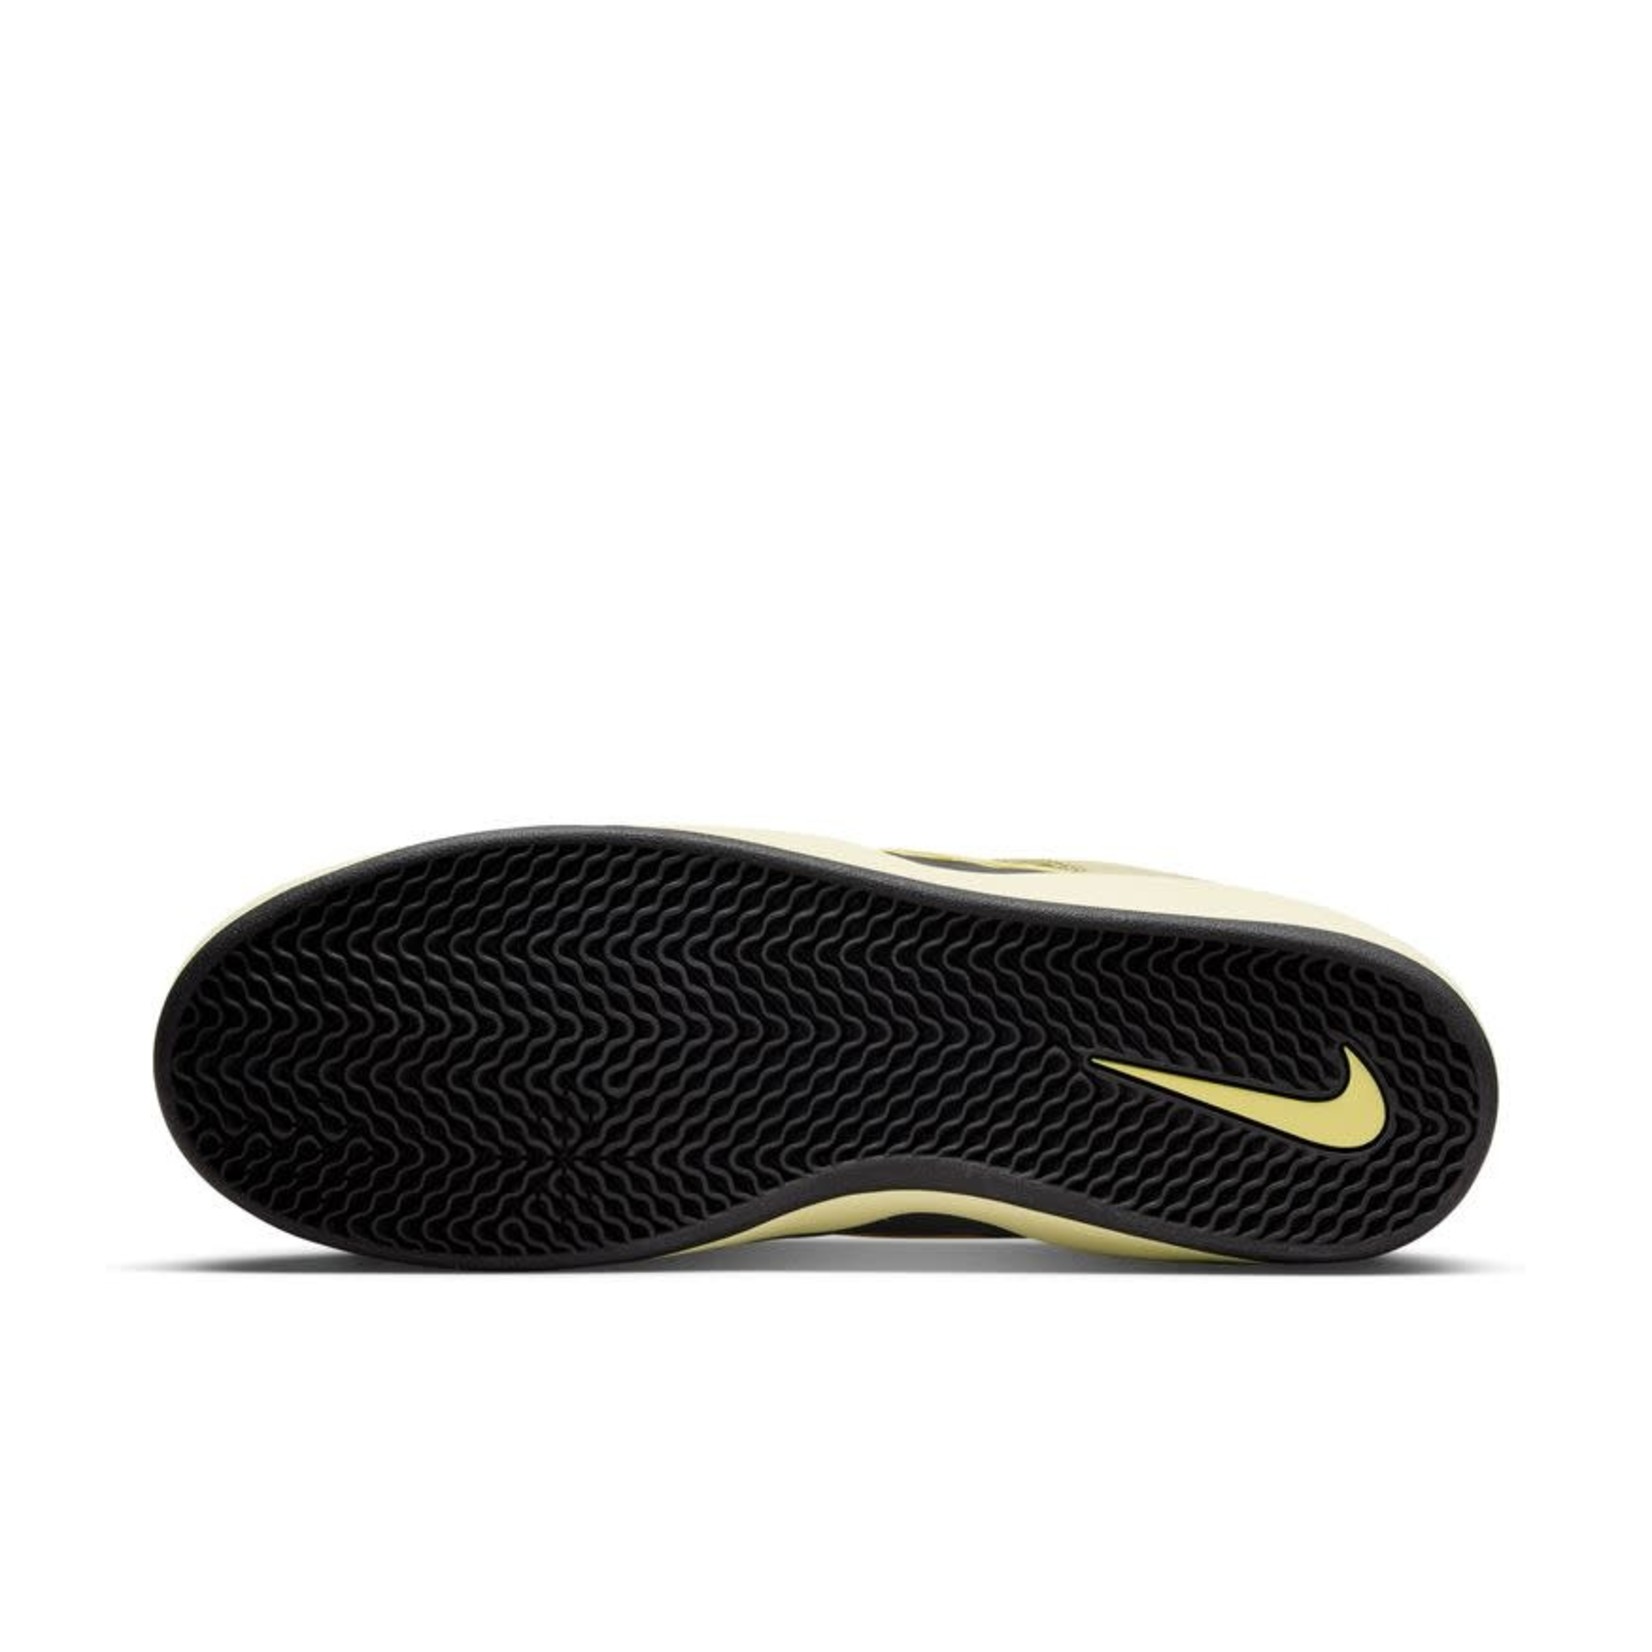 Nike SB Nike SB Ishod Wair (Lemon Wash/Black)